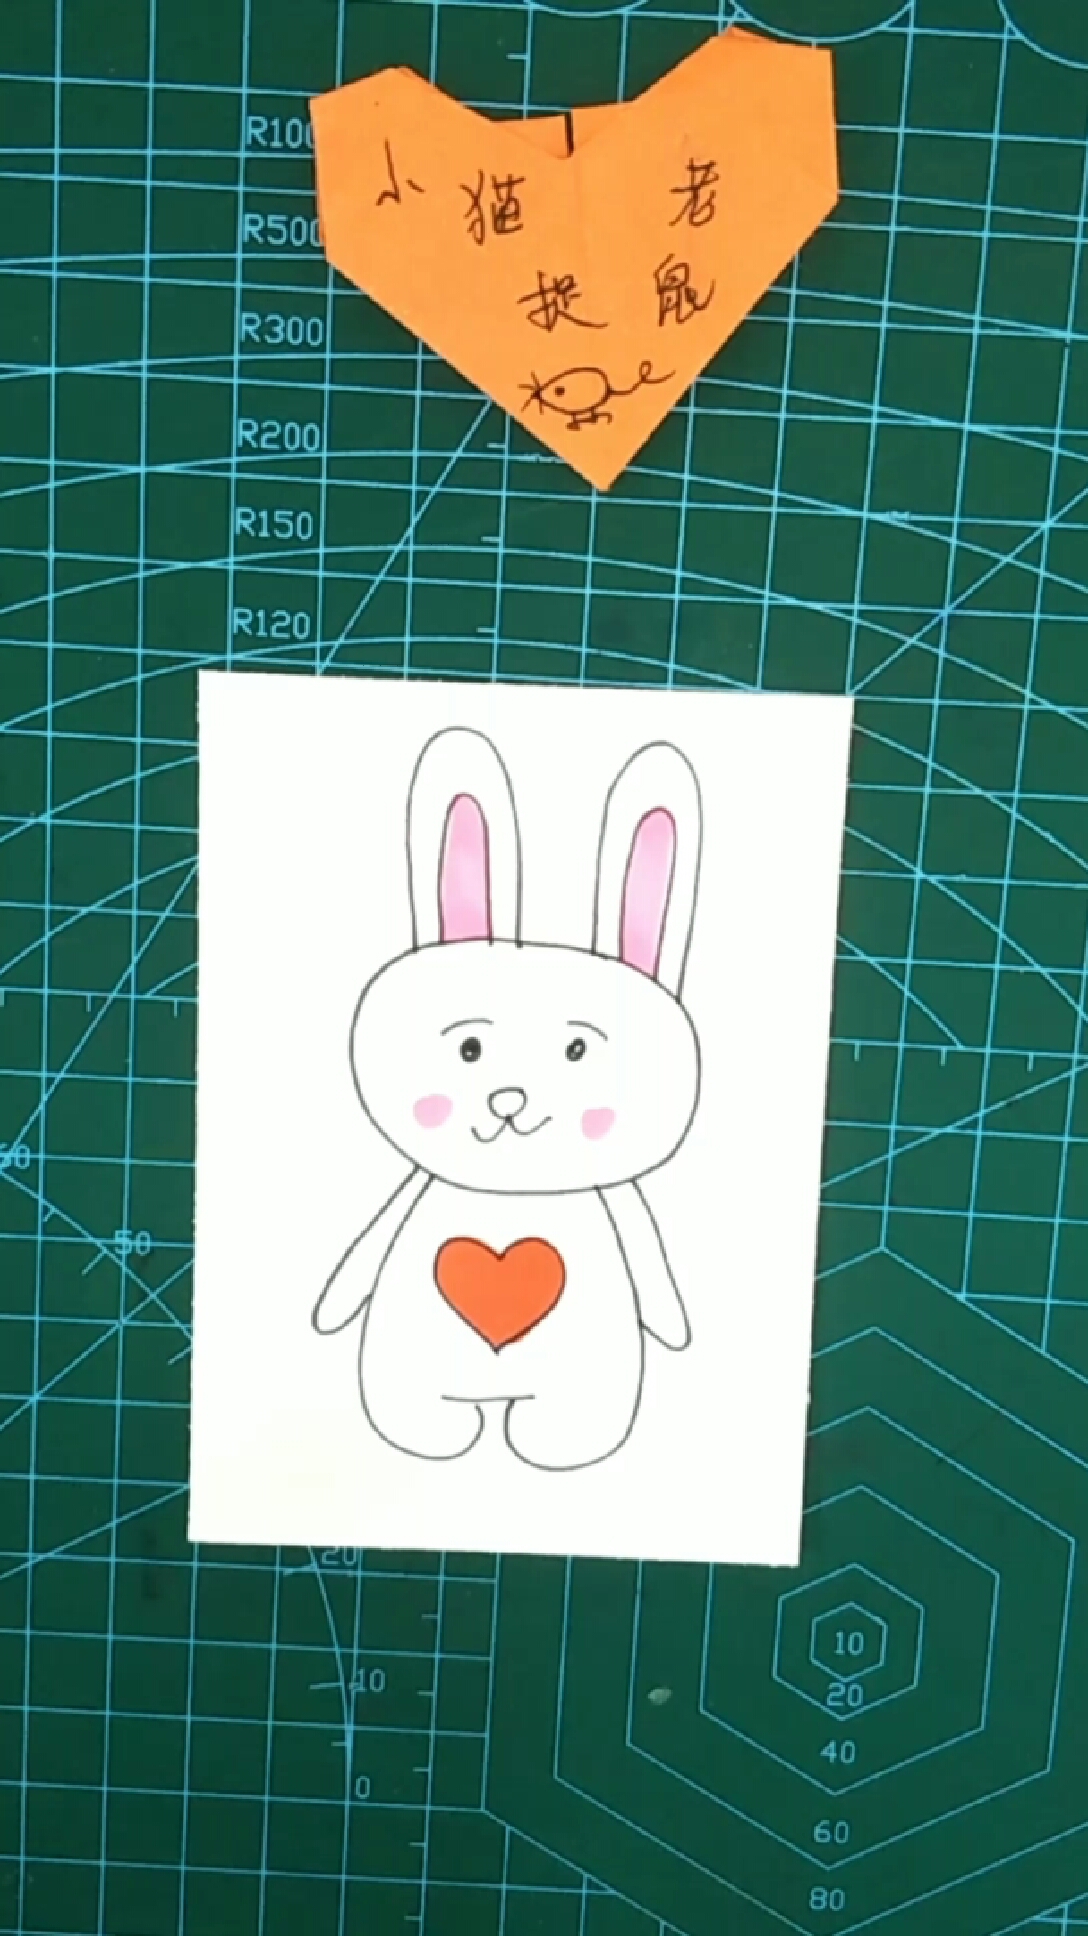 简笔画:画一只萌萌哒小兔子